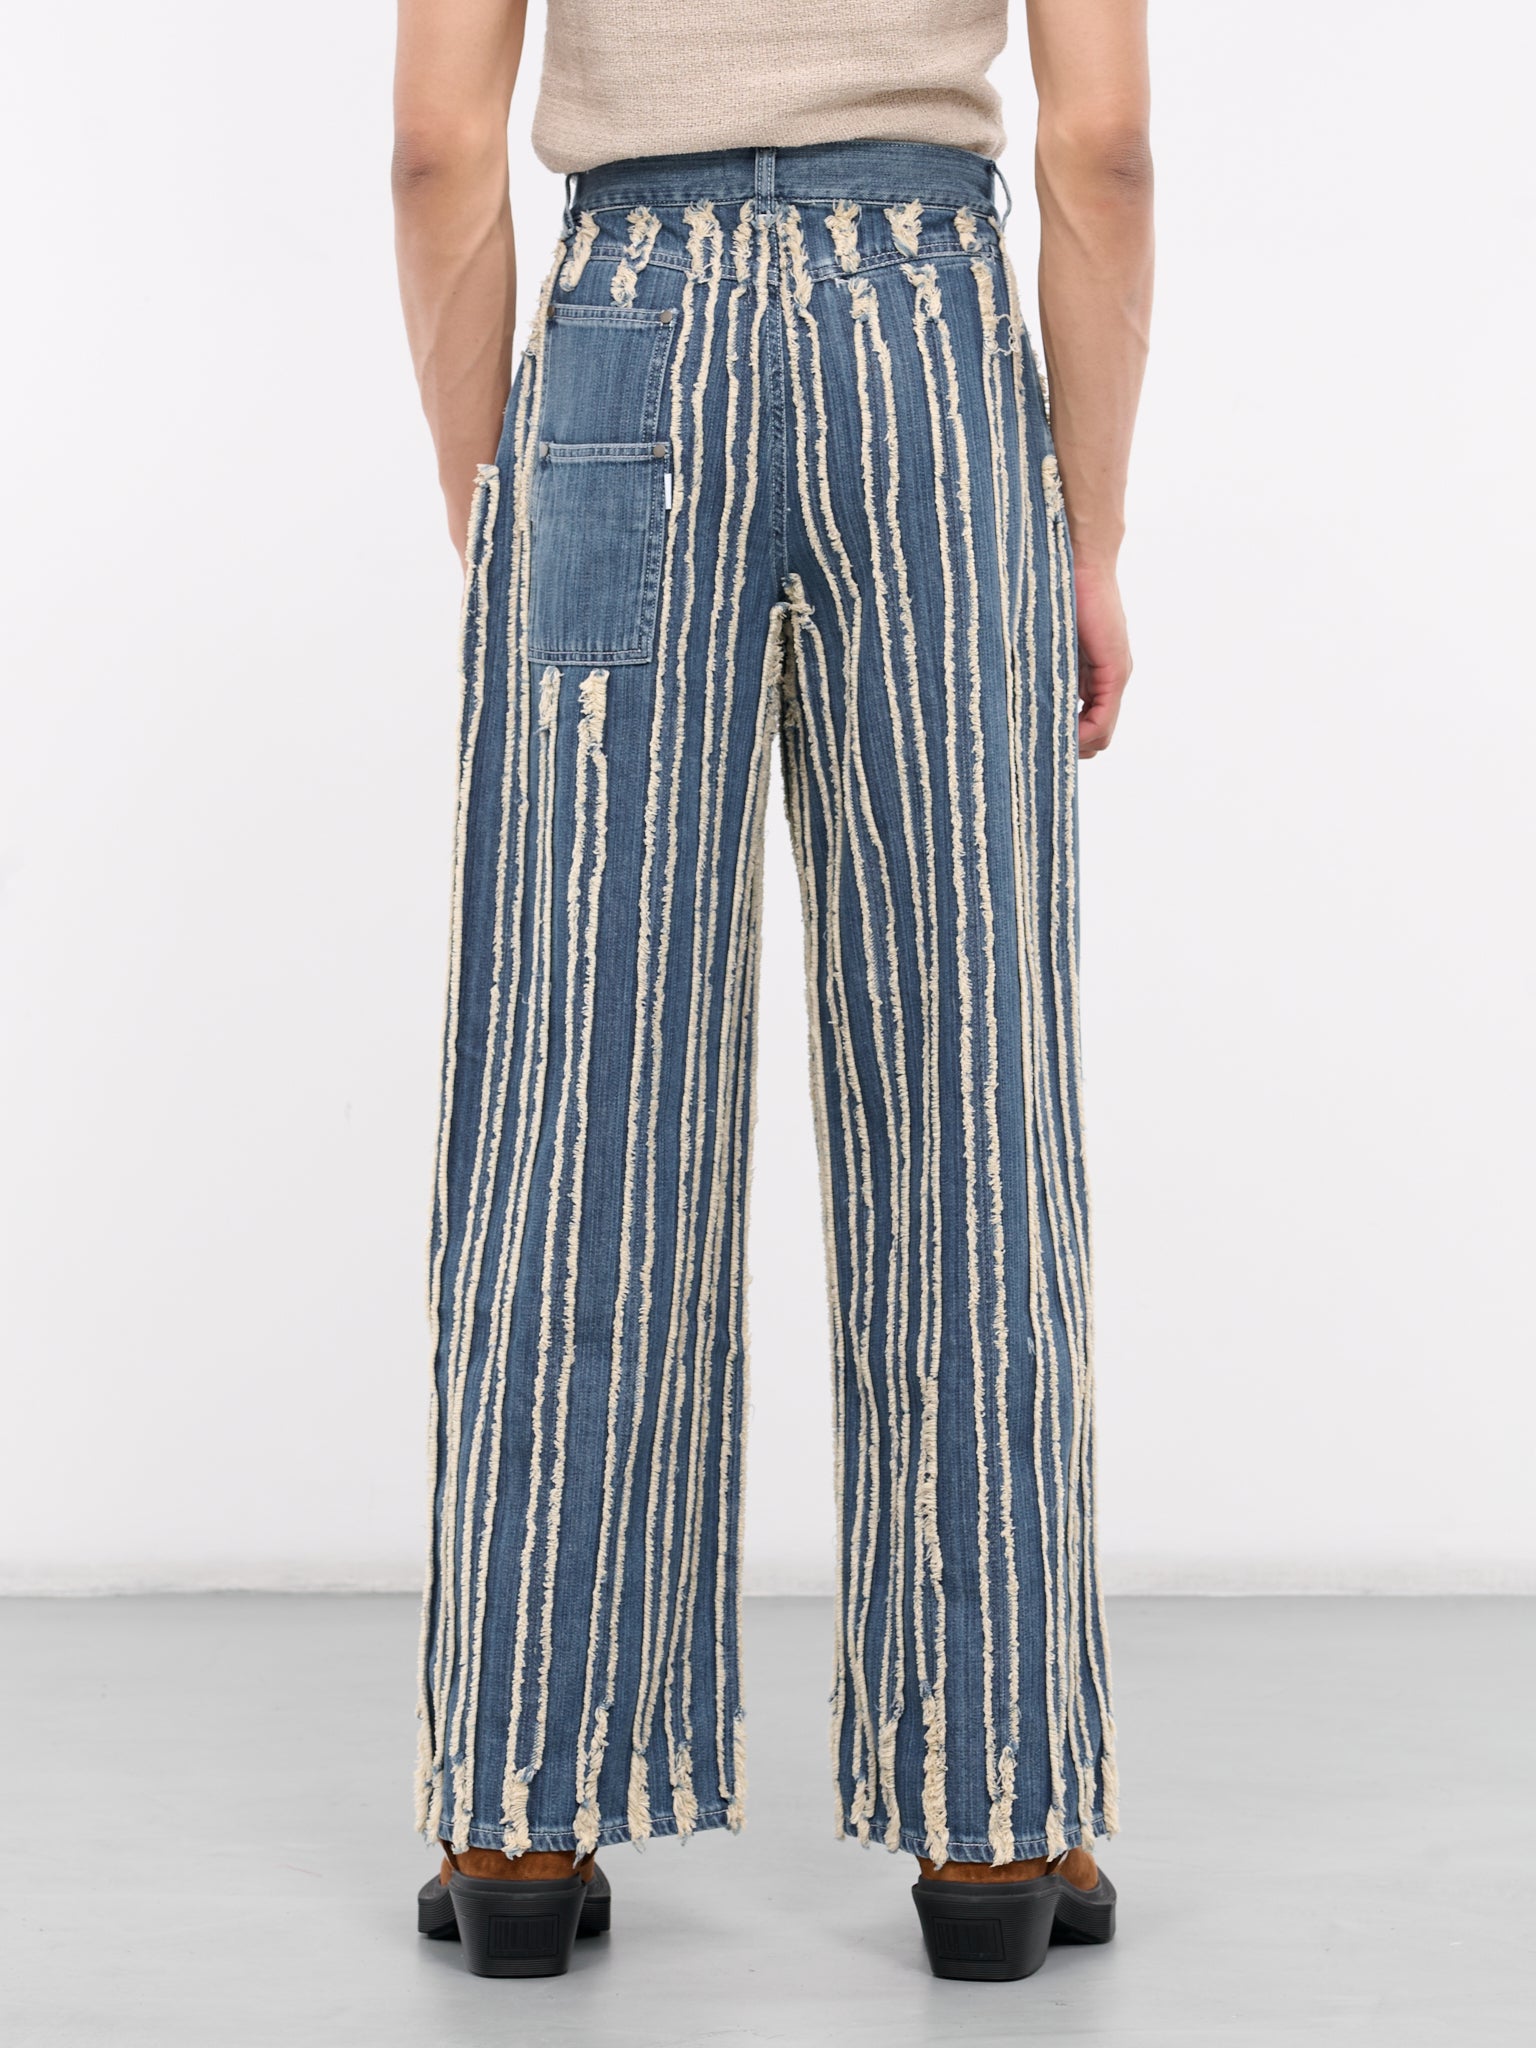 Fringed Loose Denim Jeans (PJ001V2-MEDIUM-BLUE)